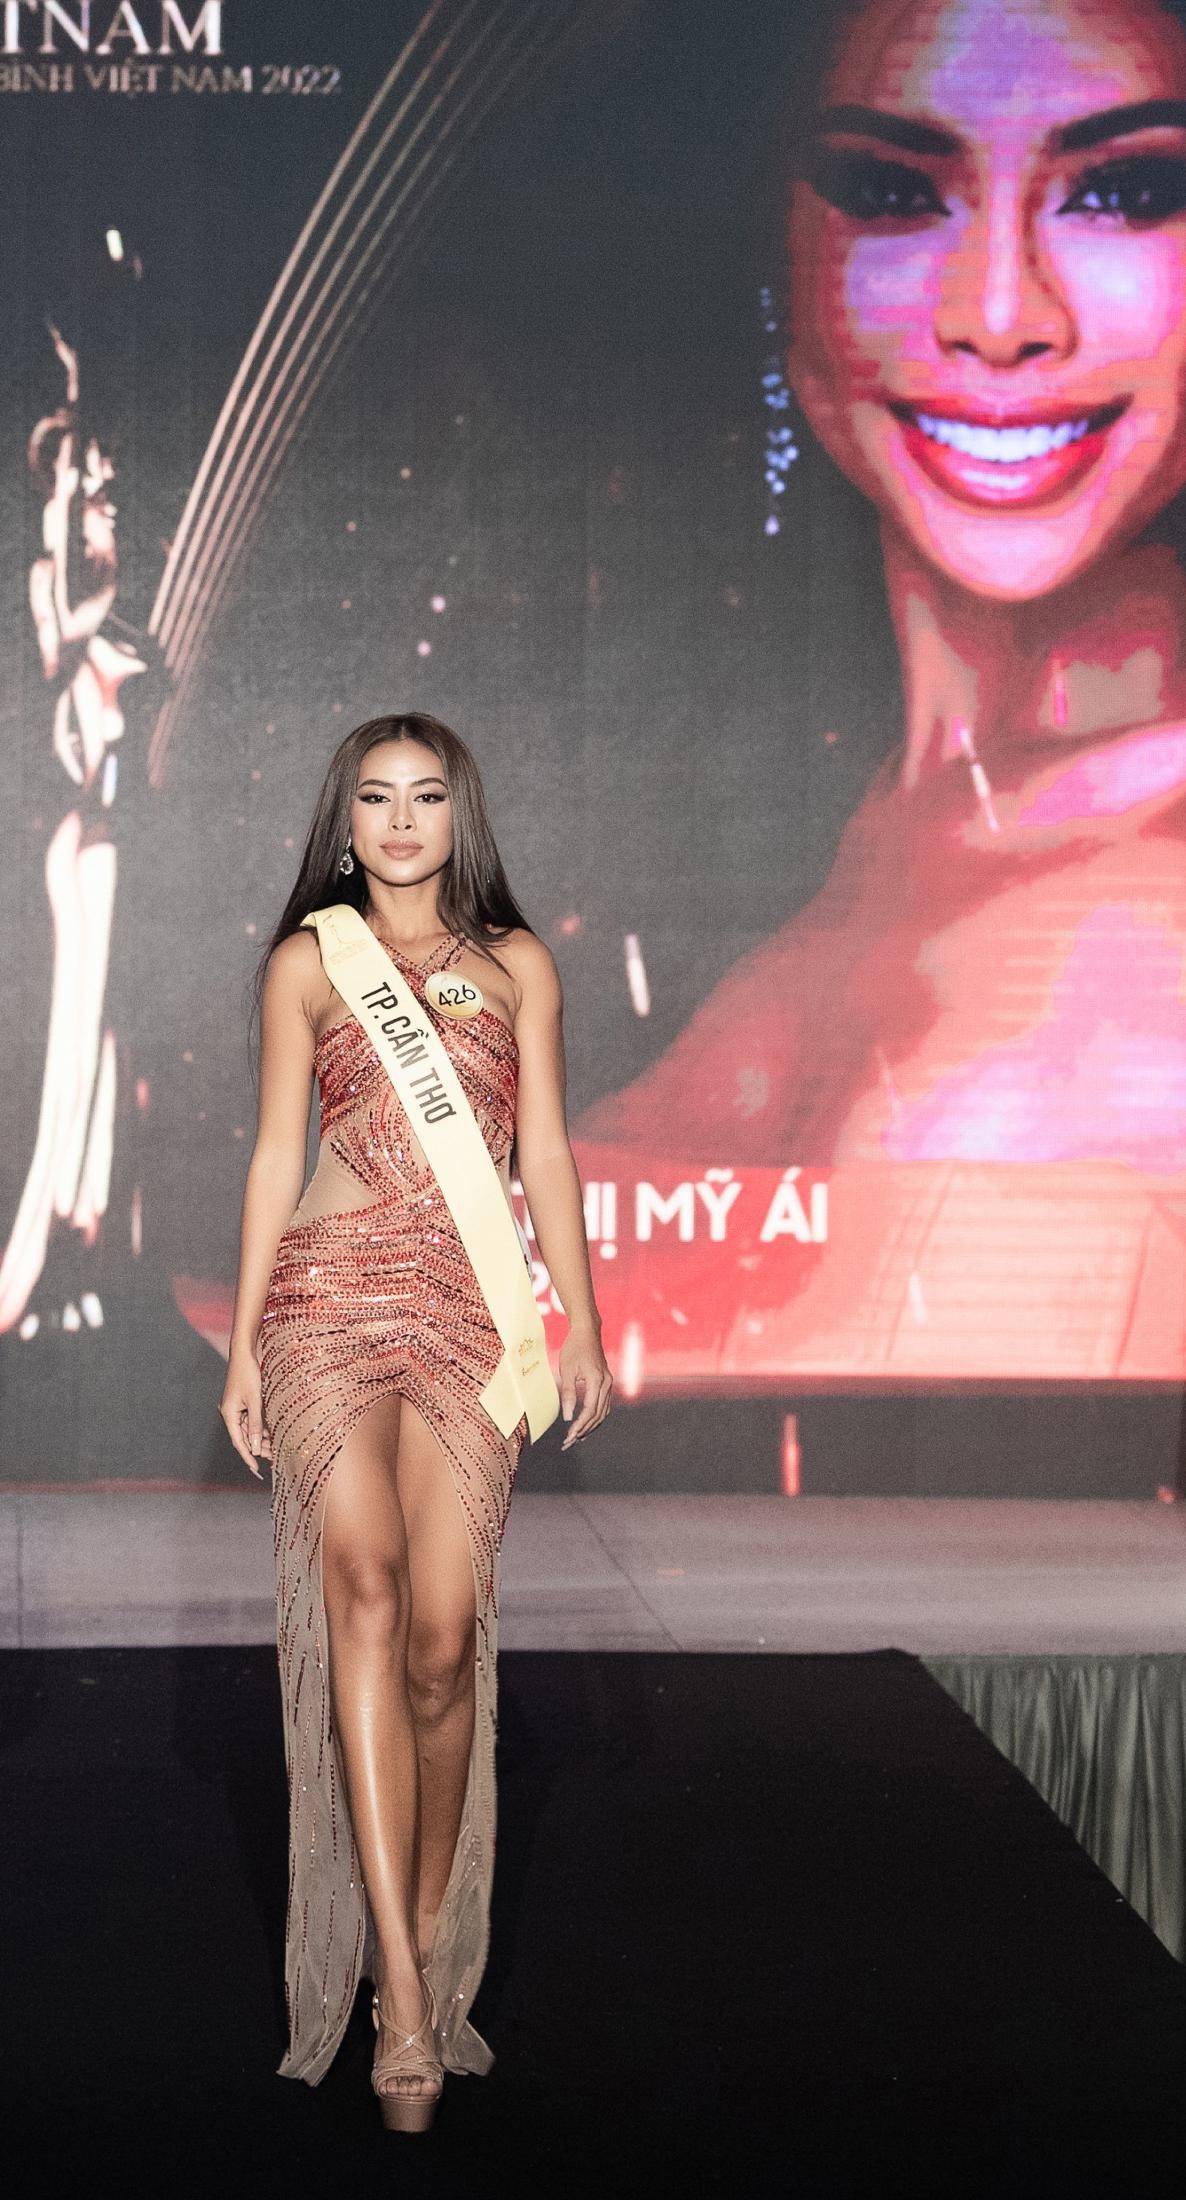 Mai Ngô, Quỳnh Châu tung chiêu catwalk độc đáo tại lễ nhận sash của Miss Grand Vietnam 2022-7